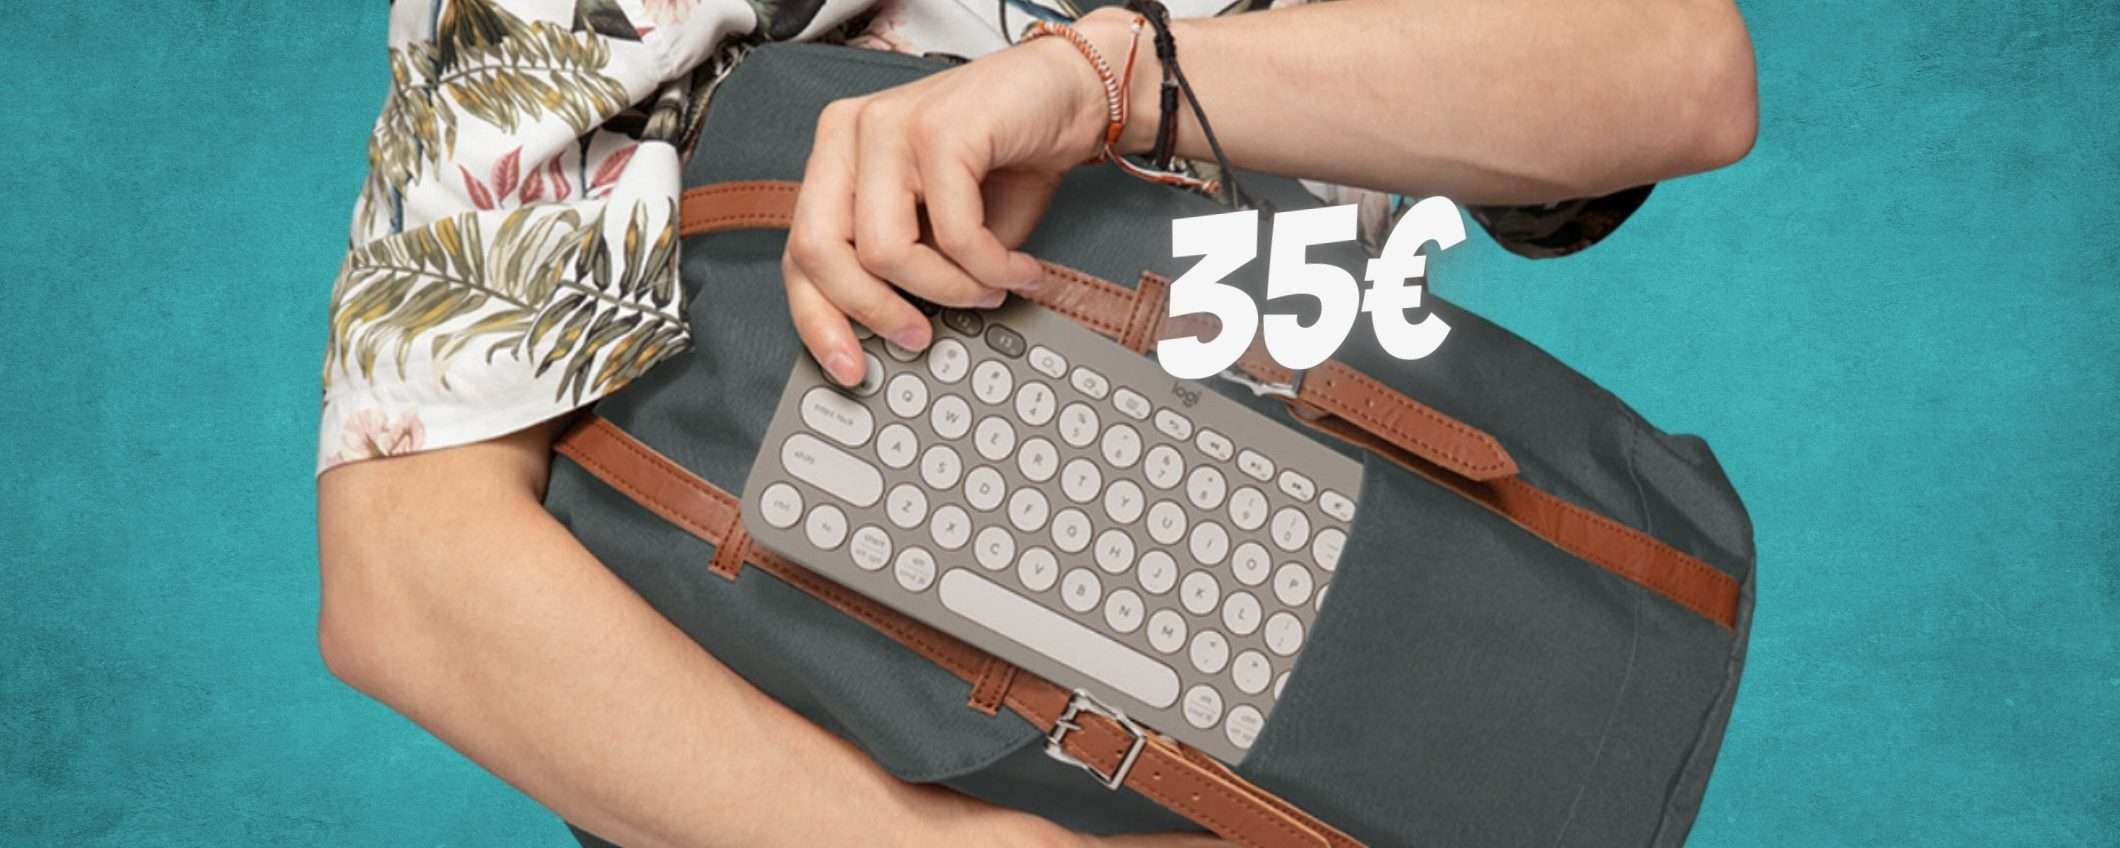 Logitech K380: la tastiera wireless COMPATIBILE con TUTTO a soli 35€